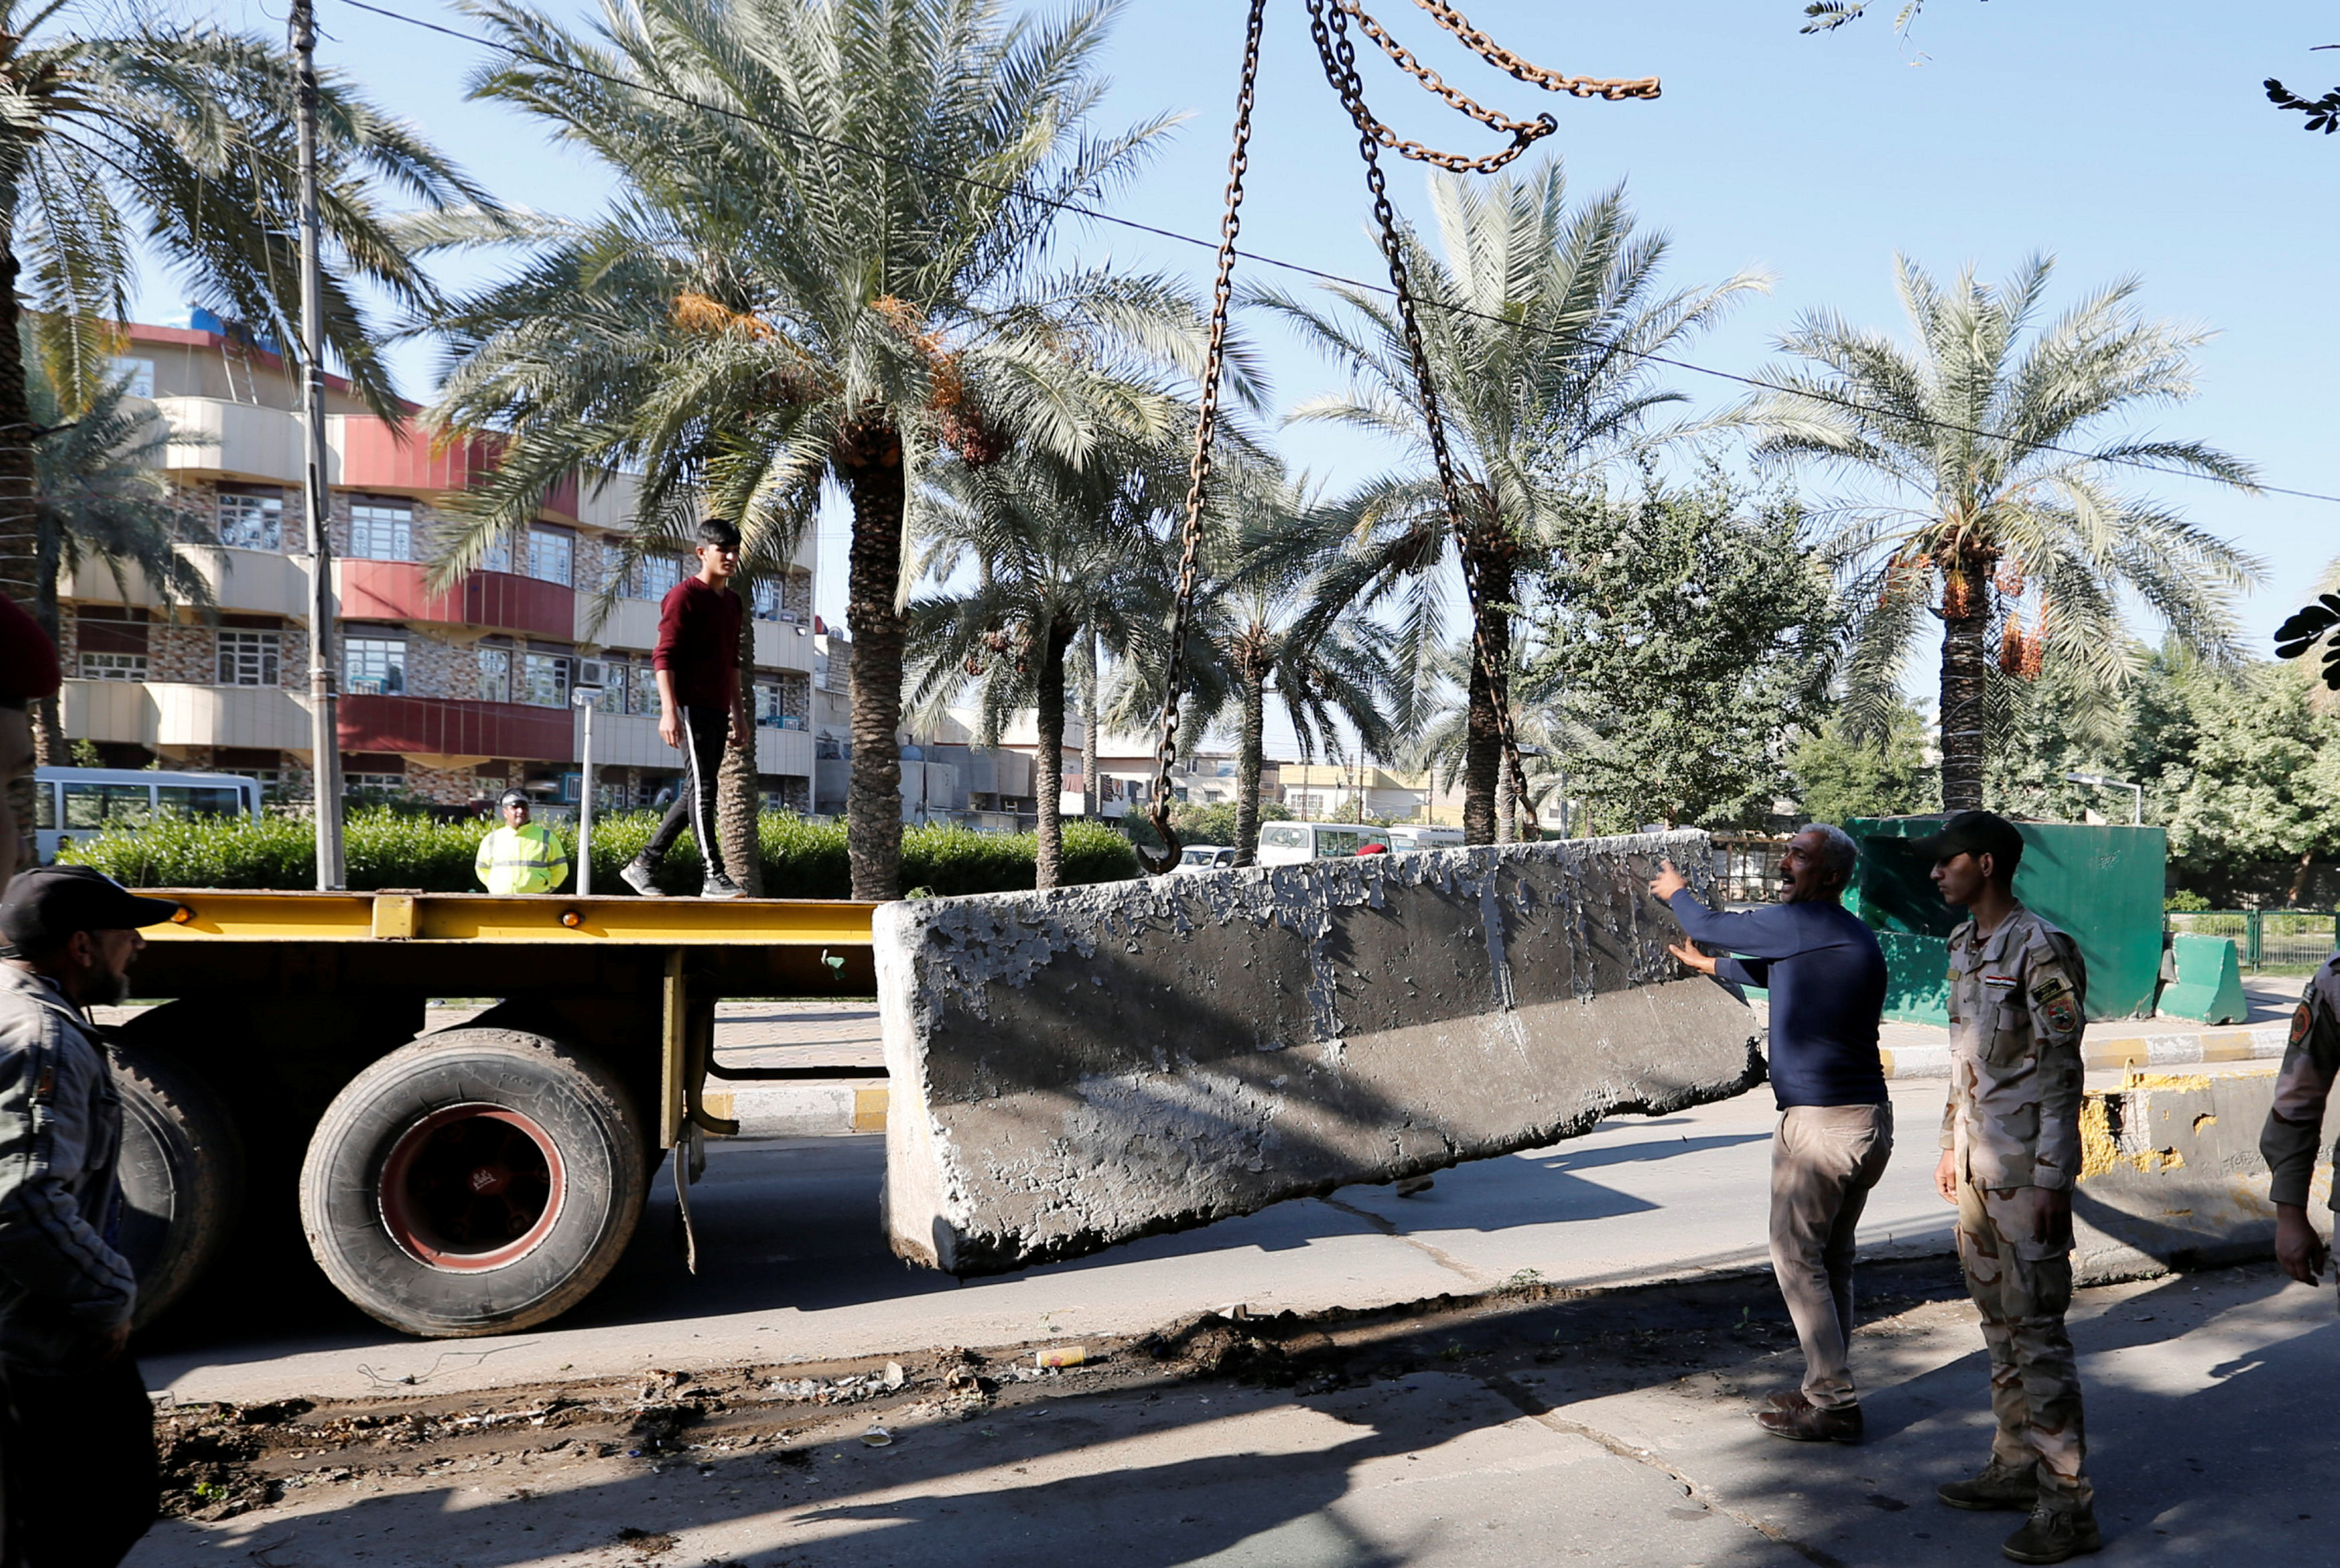 قوات الأمن العراقية والعمال يستخدمون رافعة لإزالة حاجز إسمنتي في شارع مؤدي للمنطقة الخضراء في بغداد. 28  نوفمبر 2018. رويترز